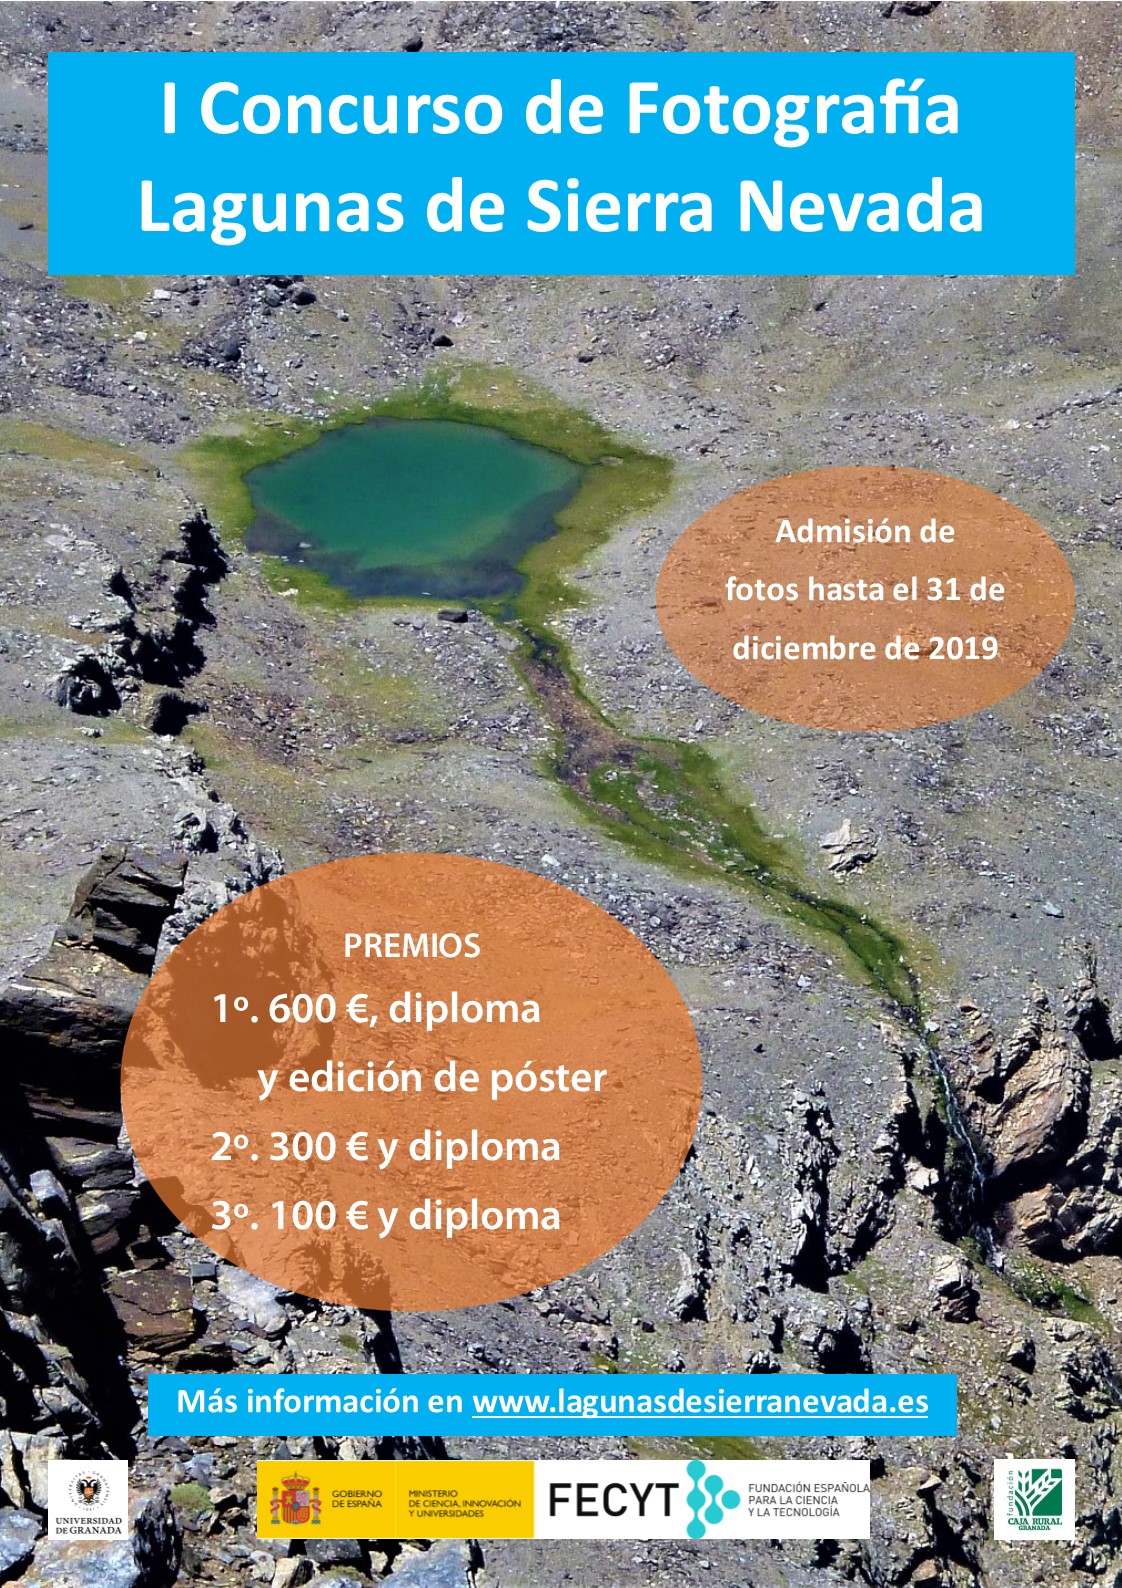 I Concurso de Fotografía Lagunas de Sierra Nevada